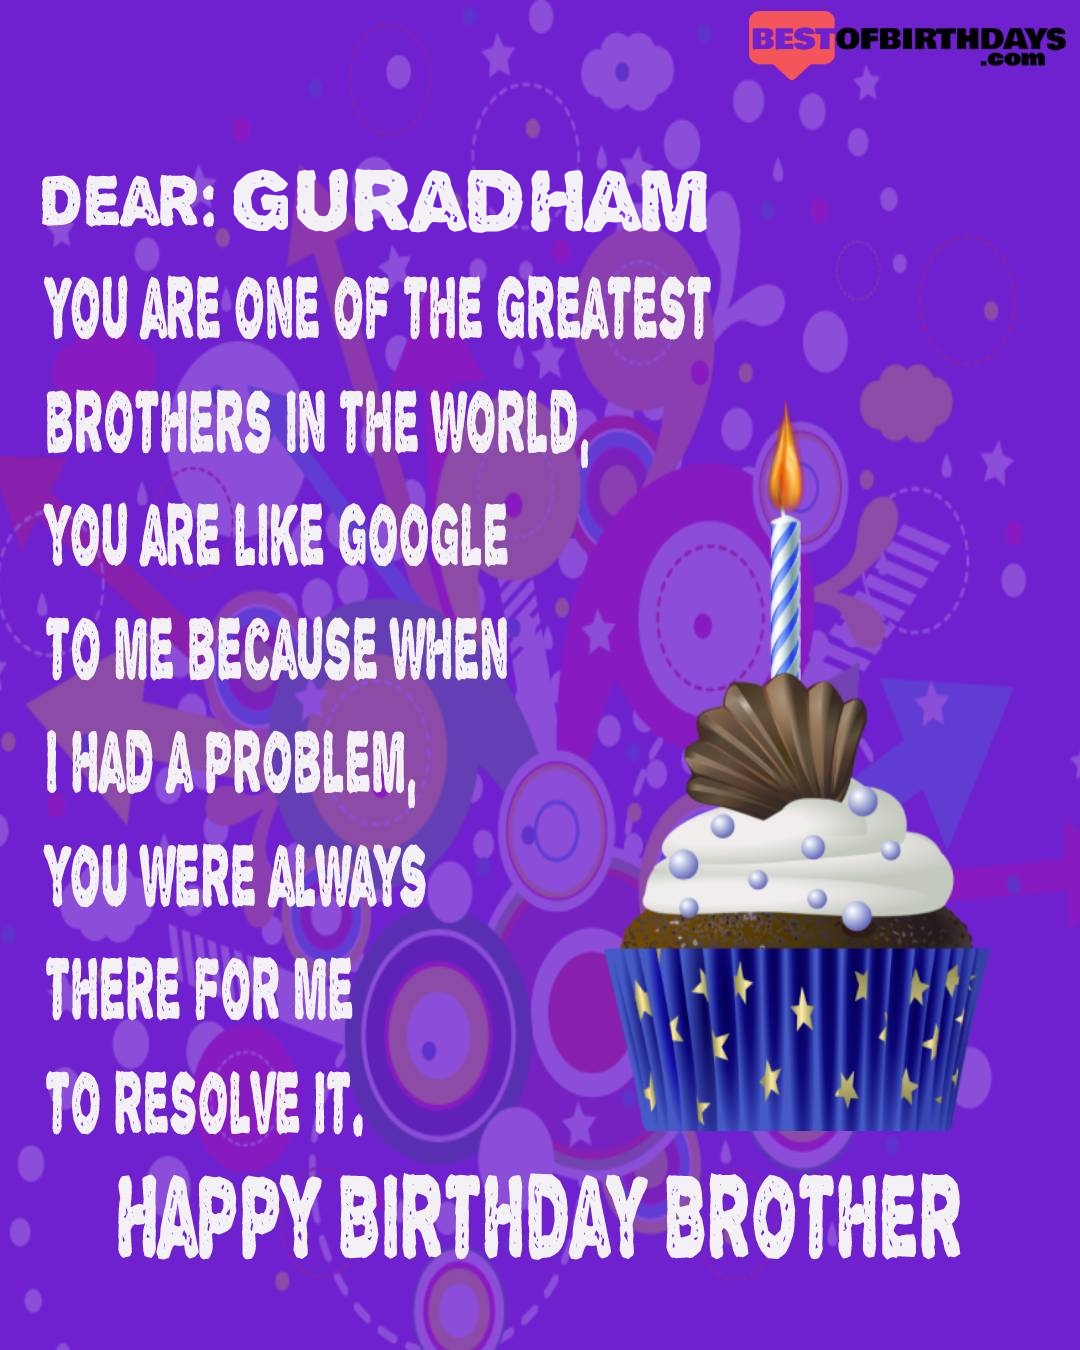 Happy birthday guradham bhai brother bro